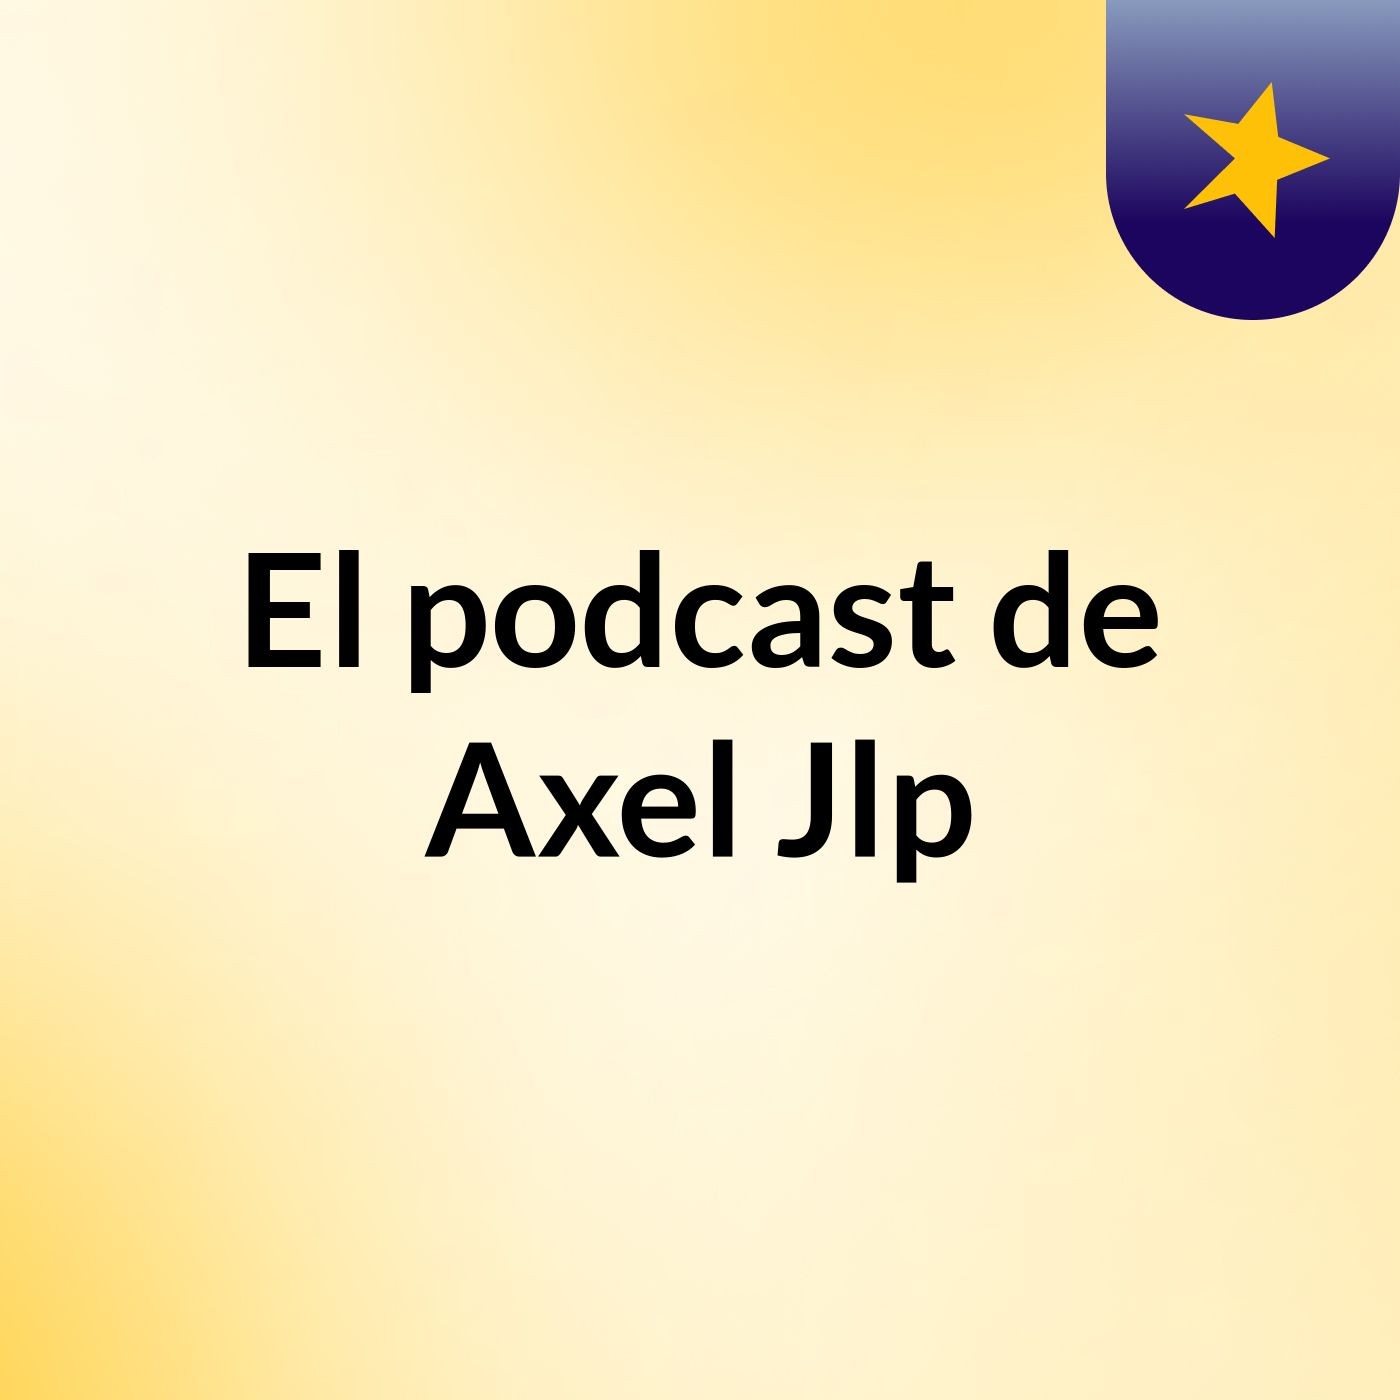 El podcast de Axel Jlp